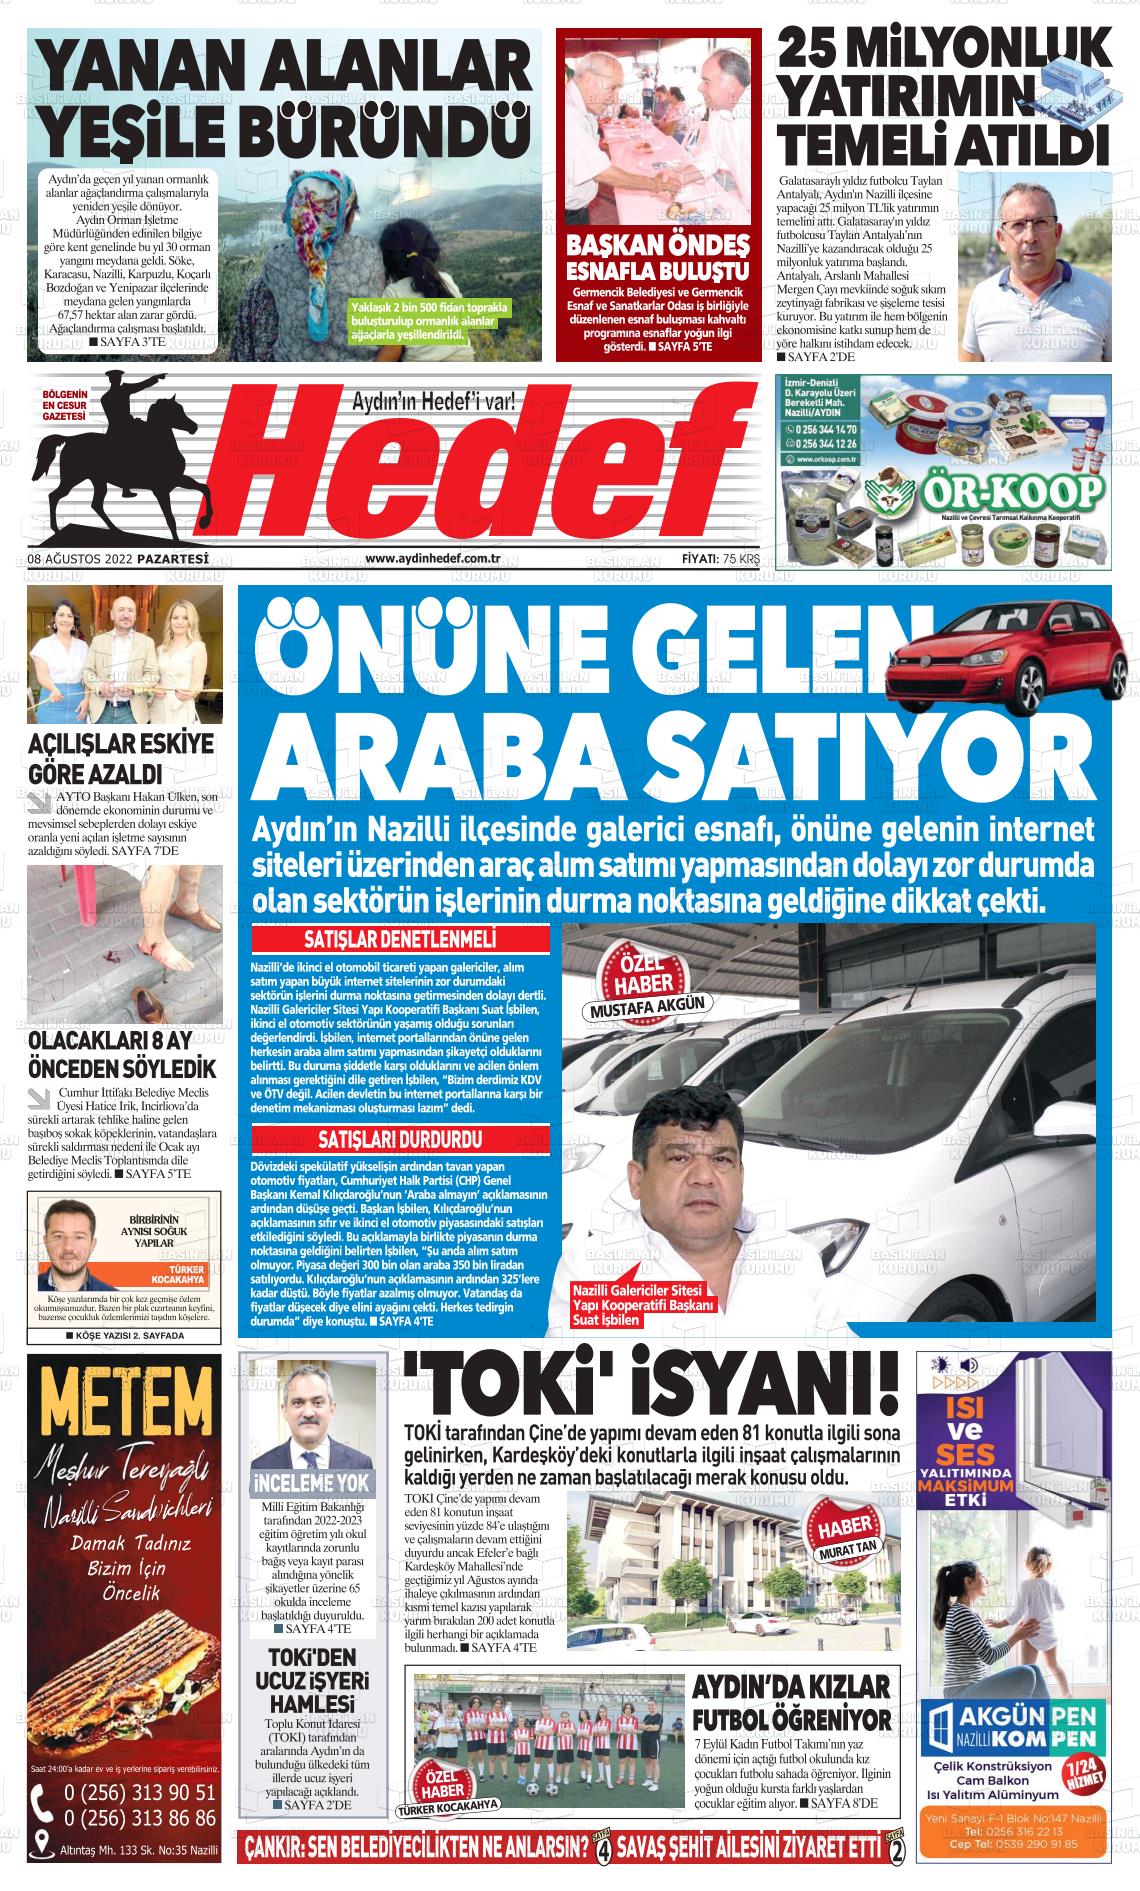 08 Ağustos 2022 Aydın Hedef Gazete Manşeti